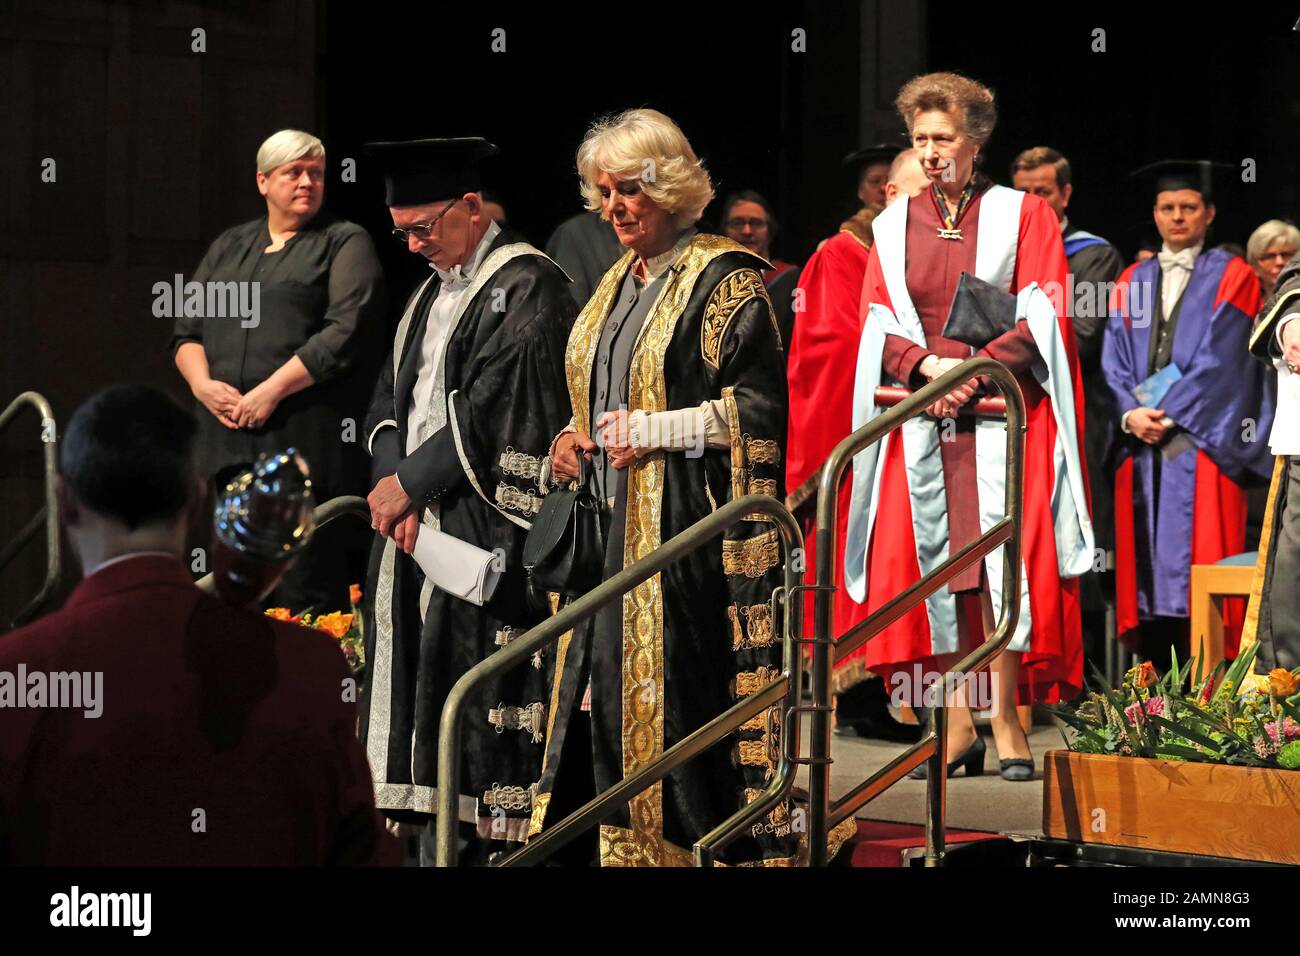 La duchessa di Cornovaglia (a destra) (conosciuta come la duchessa di Rothesay mentre in Scozia) accanto al Principal, il Professor George Boyne, e la suor-in-law la Principessa reale (a sinistra), avendo ricevuto il suo diploma onorario presso l'Università di Aberdeen. Foto Stock